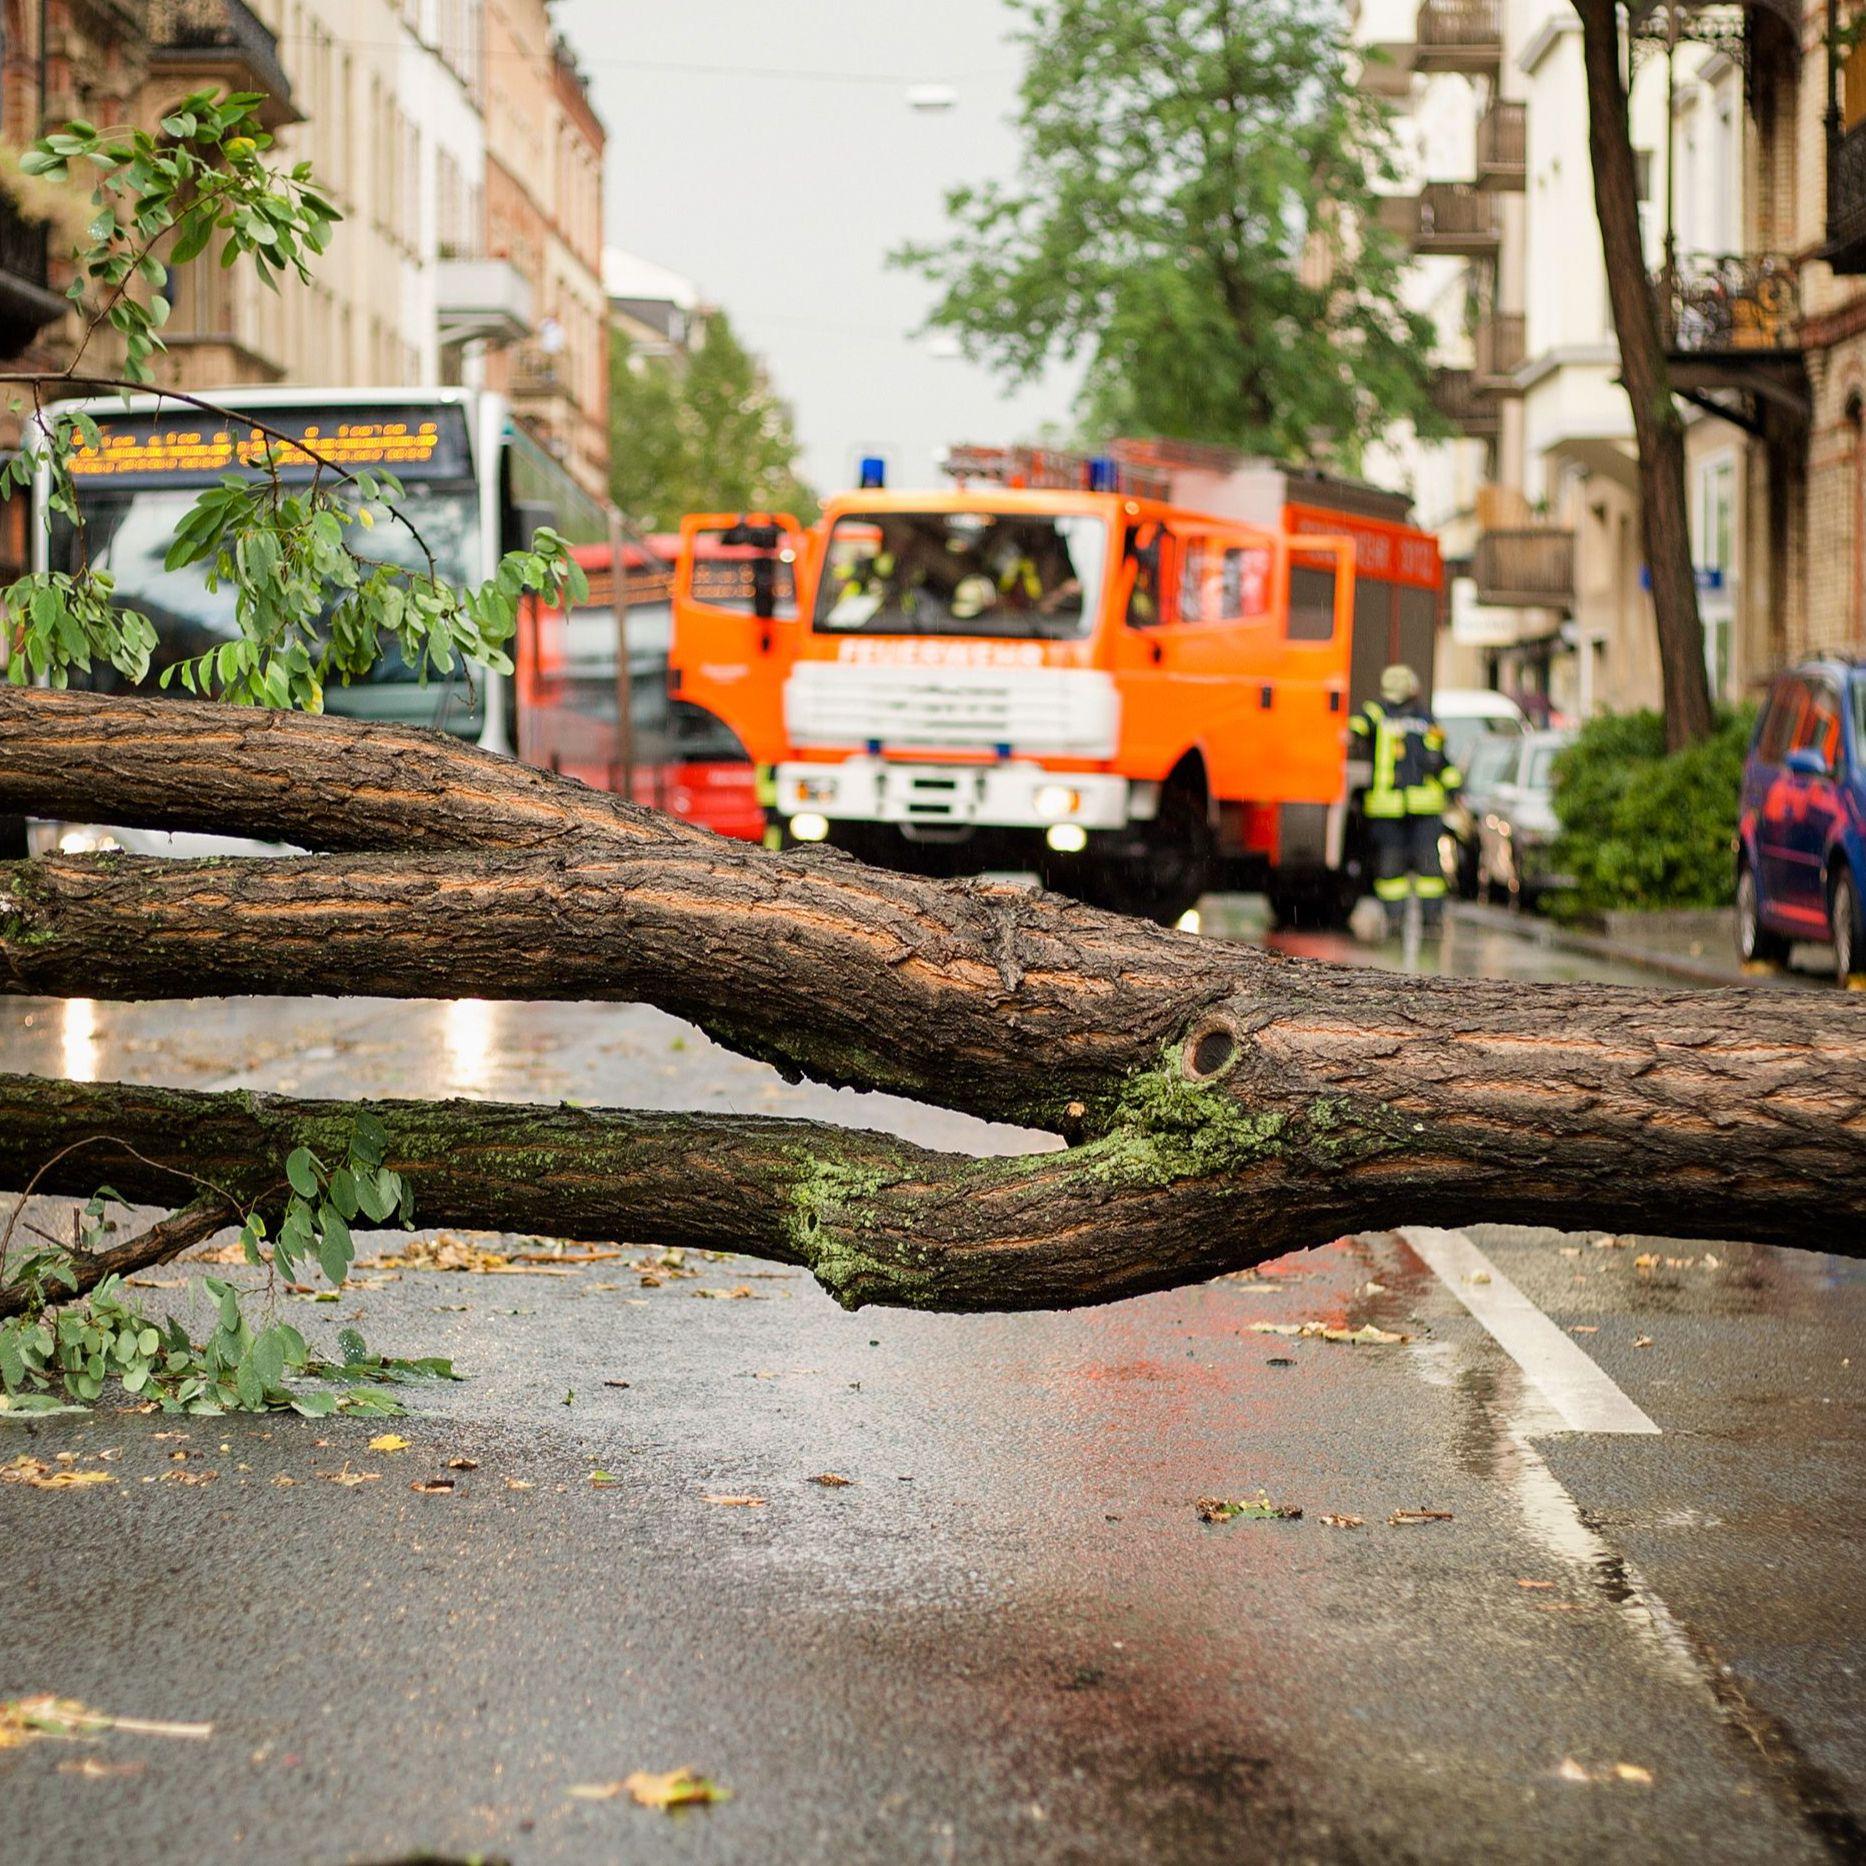 Ein Baum versperrt die Straße nach einem Sturm. Im Hintergrund ein stehender Bus und Feuerwehrfahrzeuge.